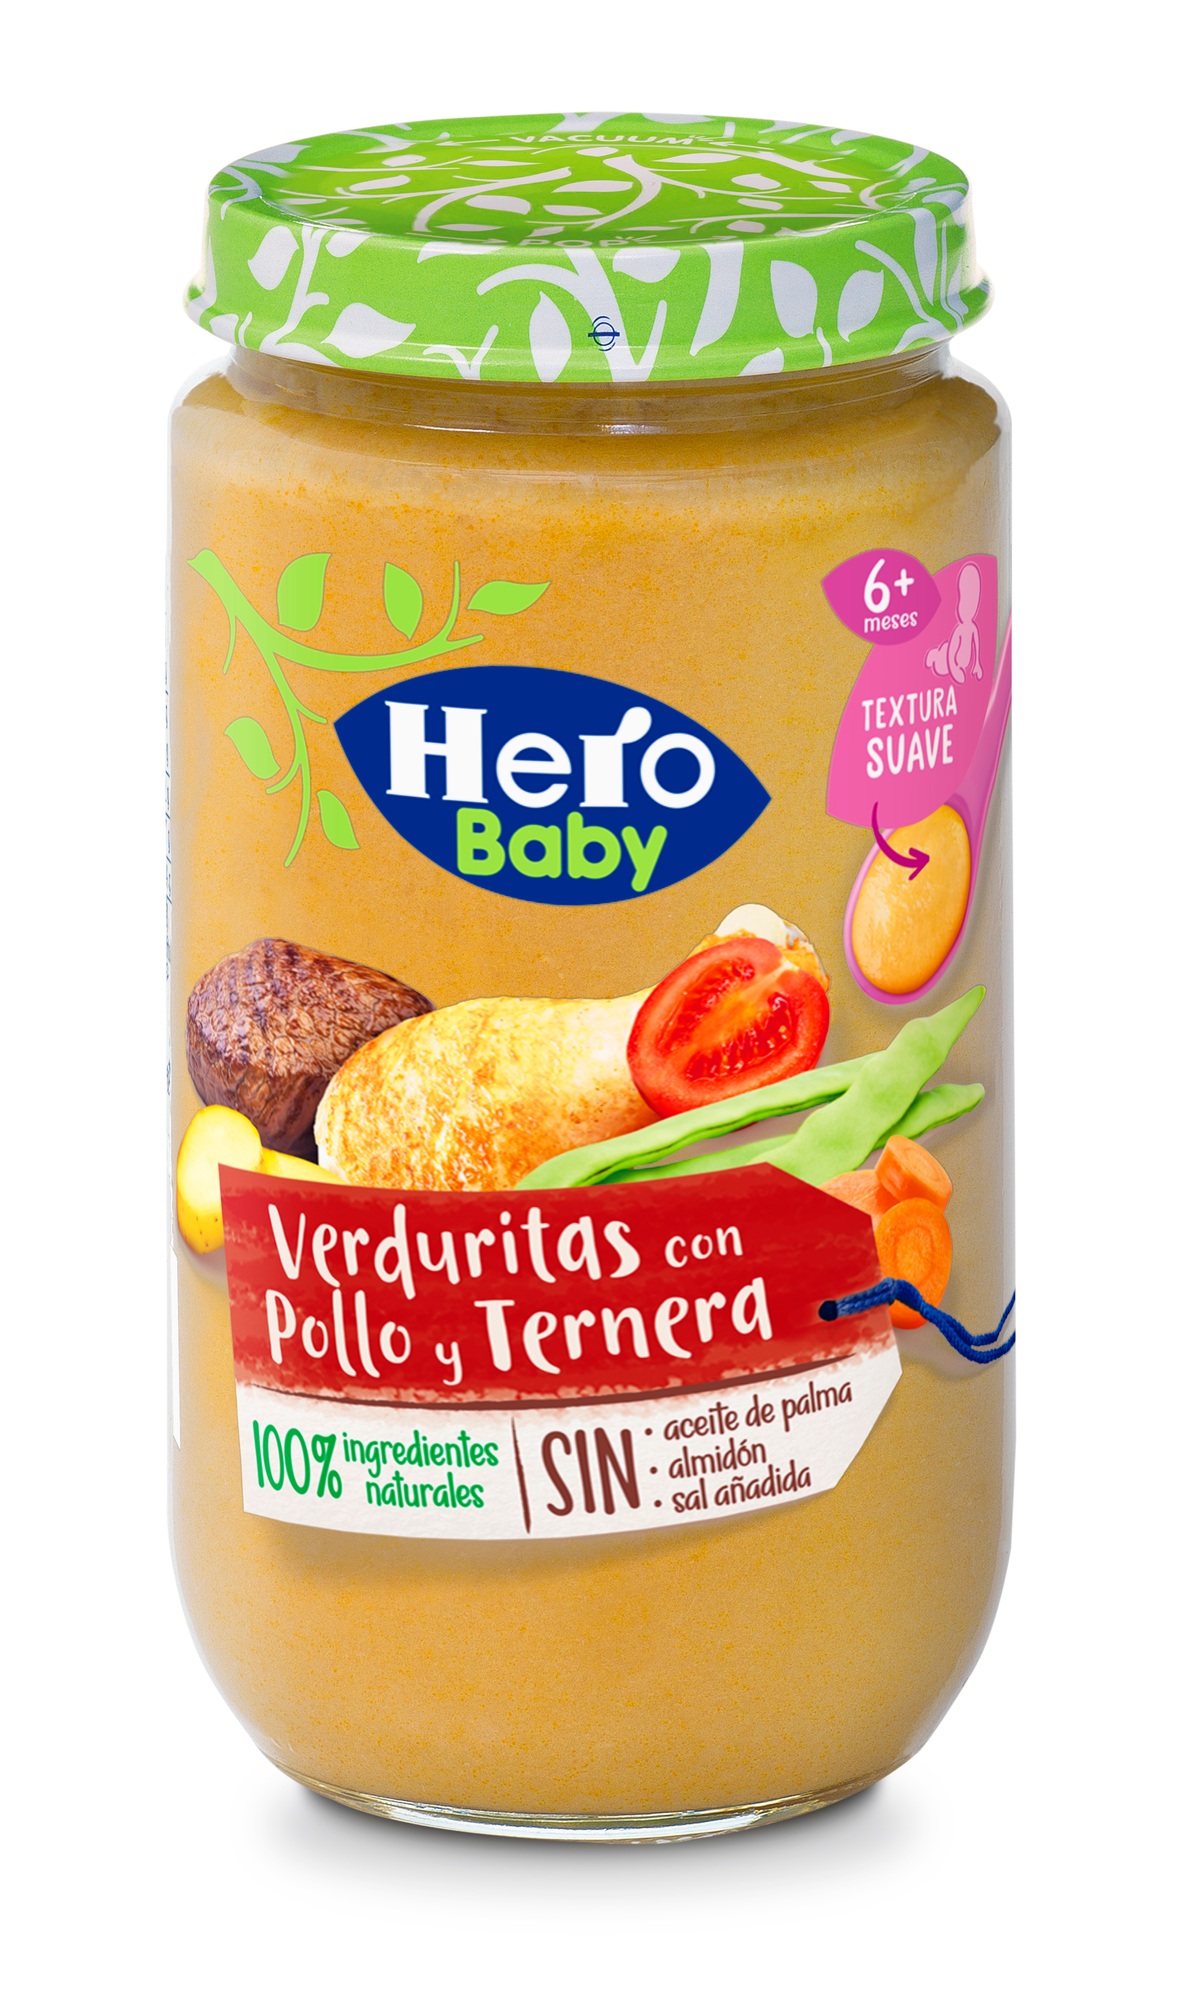 Tarrito Hero Baby verduritas con pollo